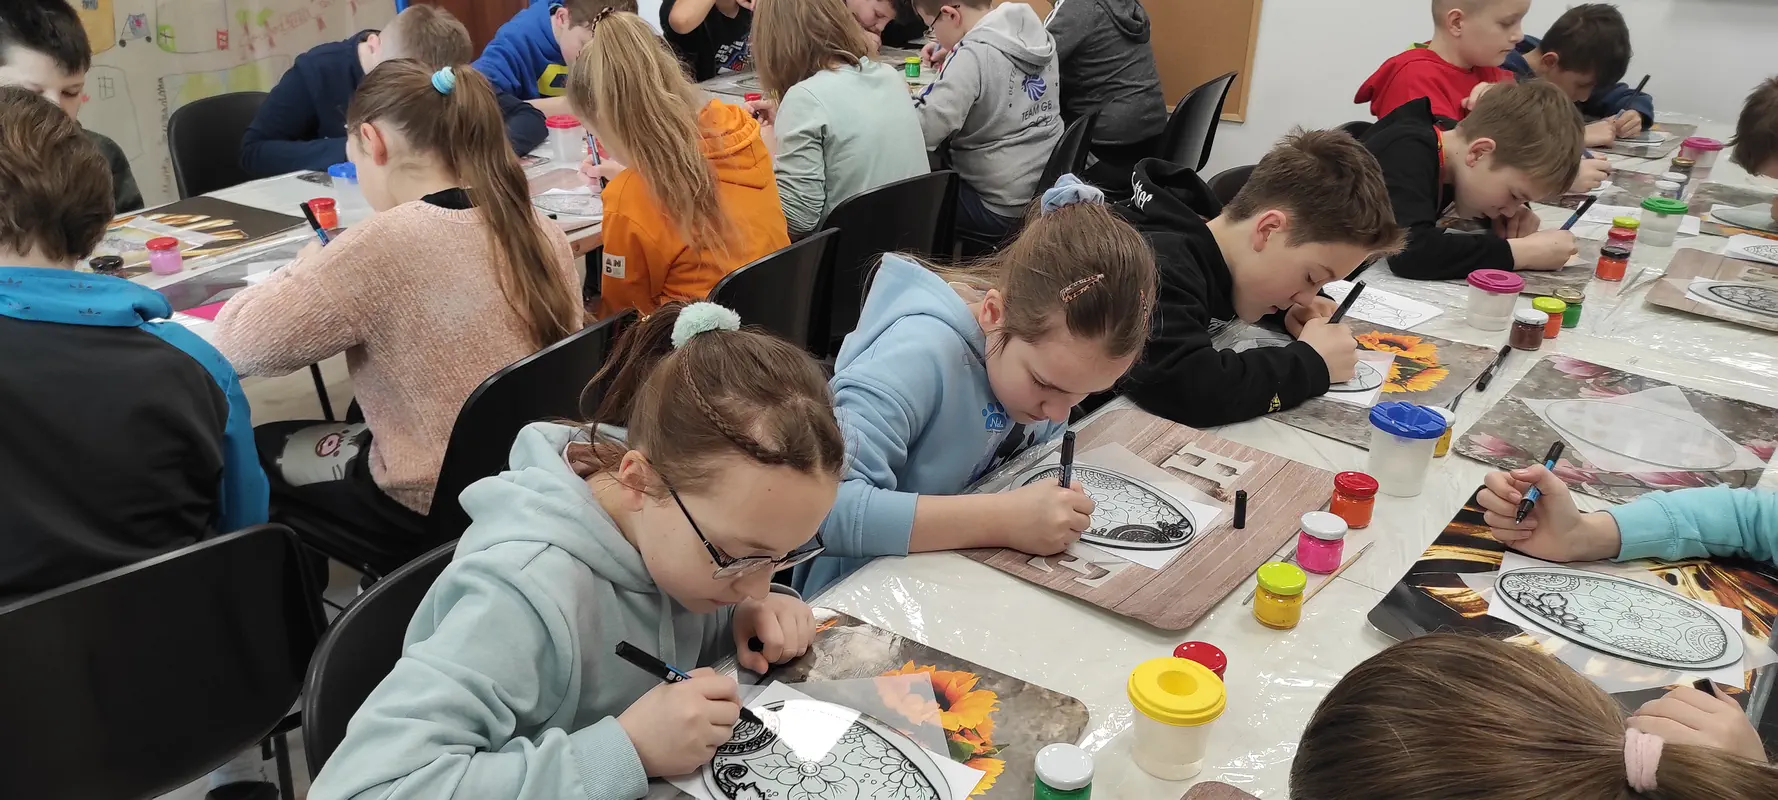 Uczniowie malują na szkle motywy wielkanocne